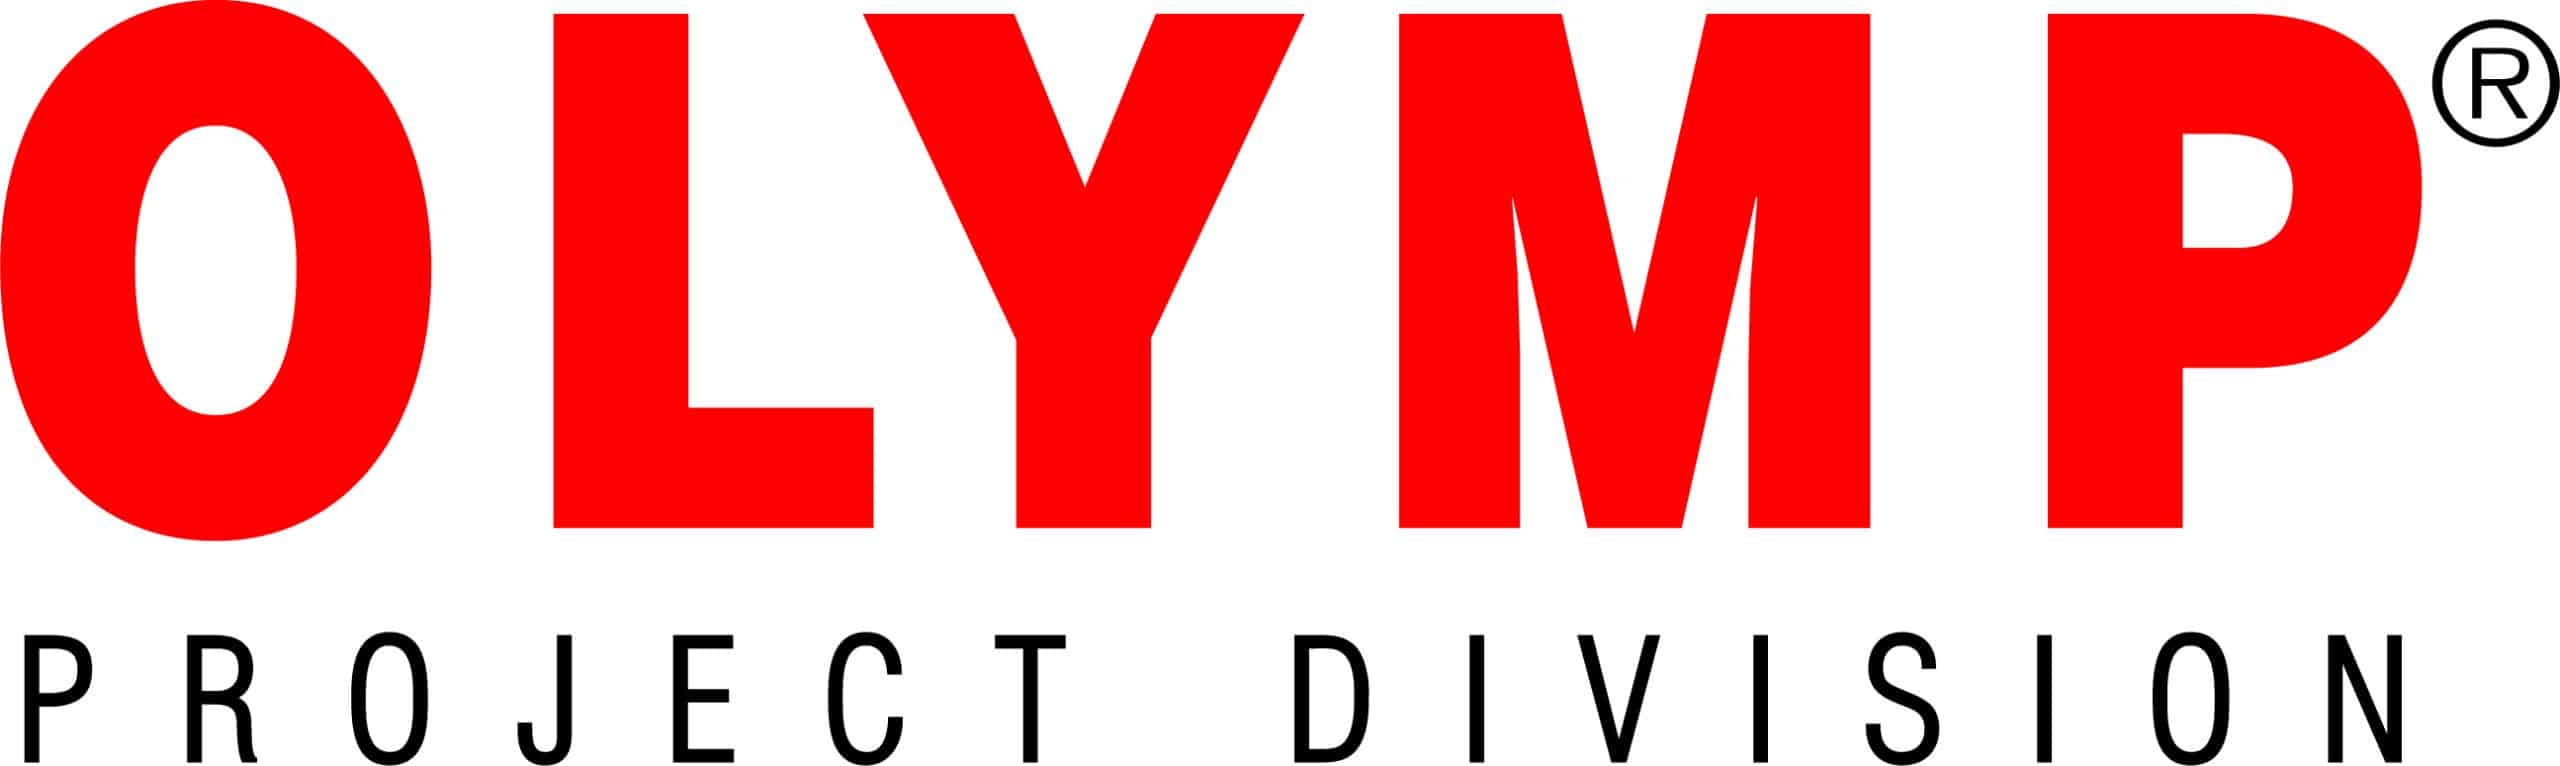 OLYMP GmbH & Co. KG